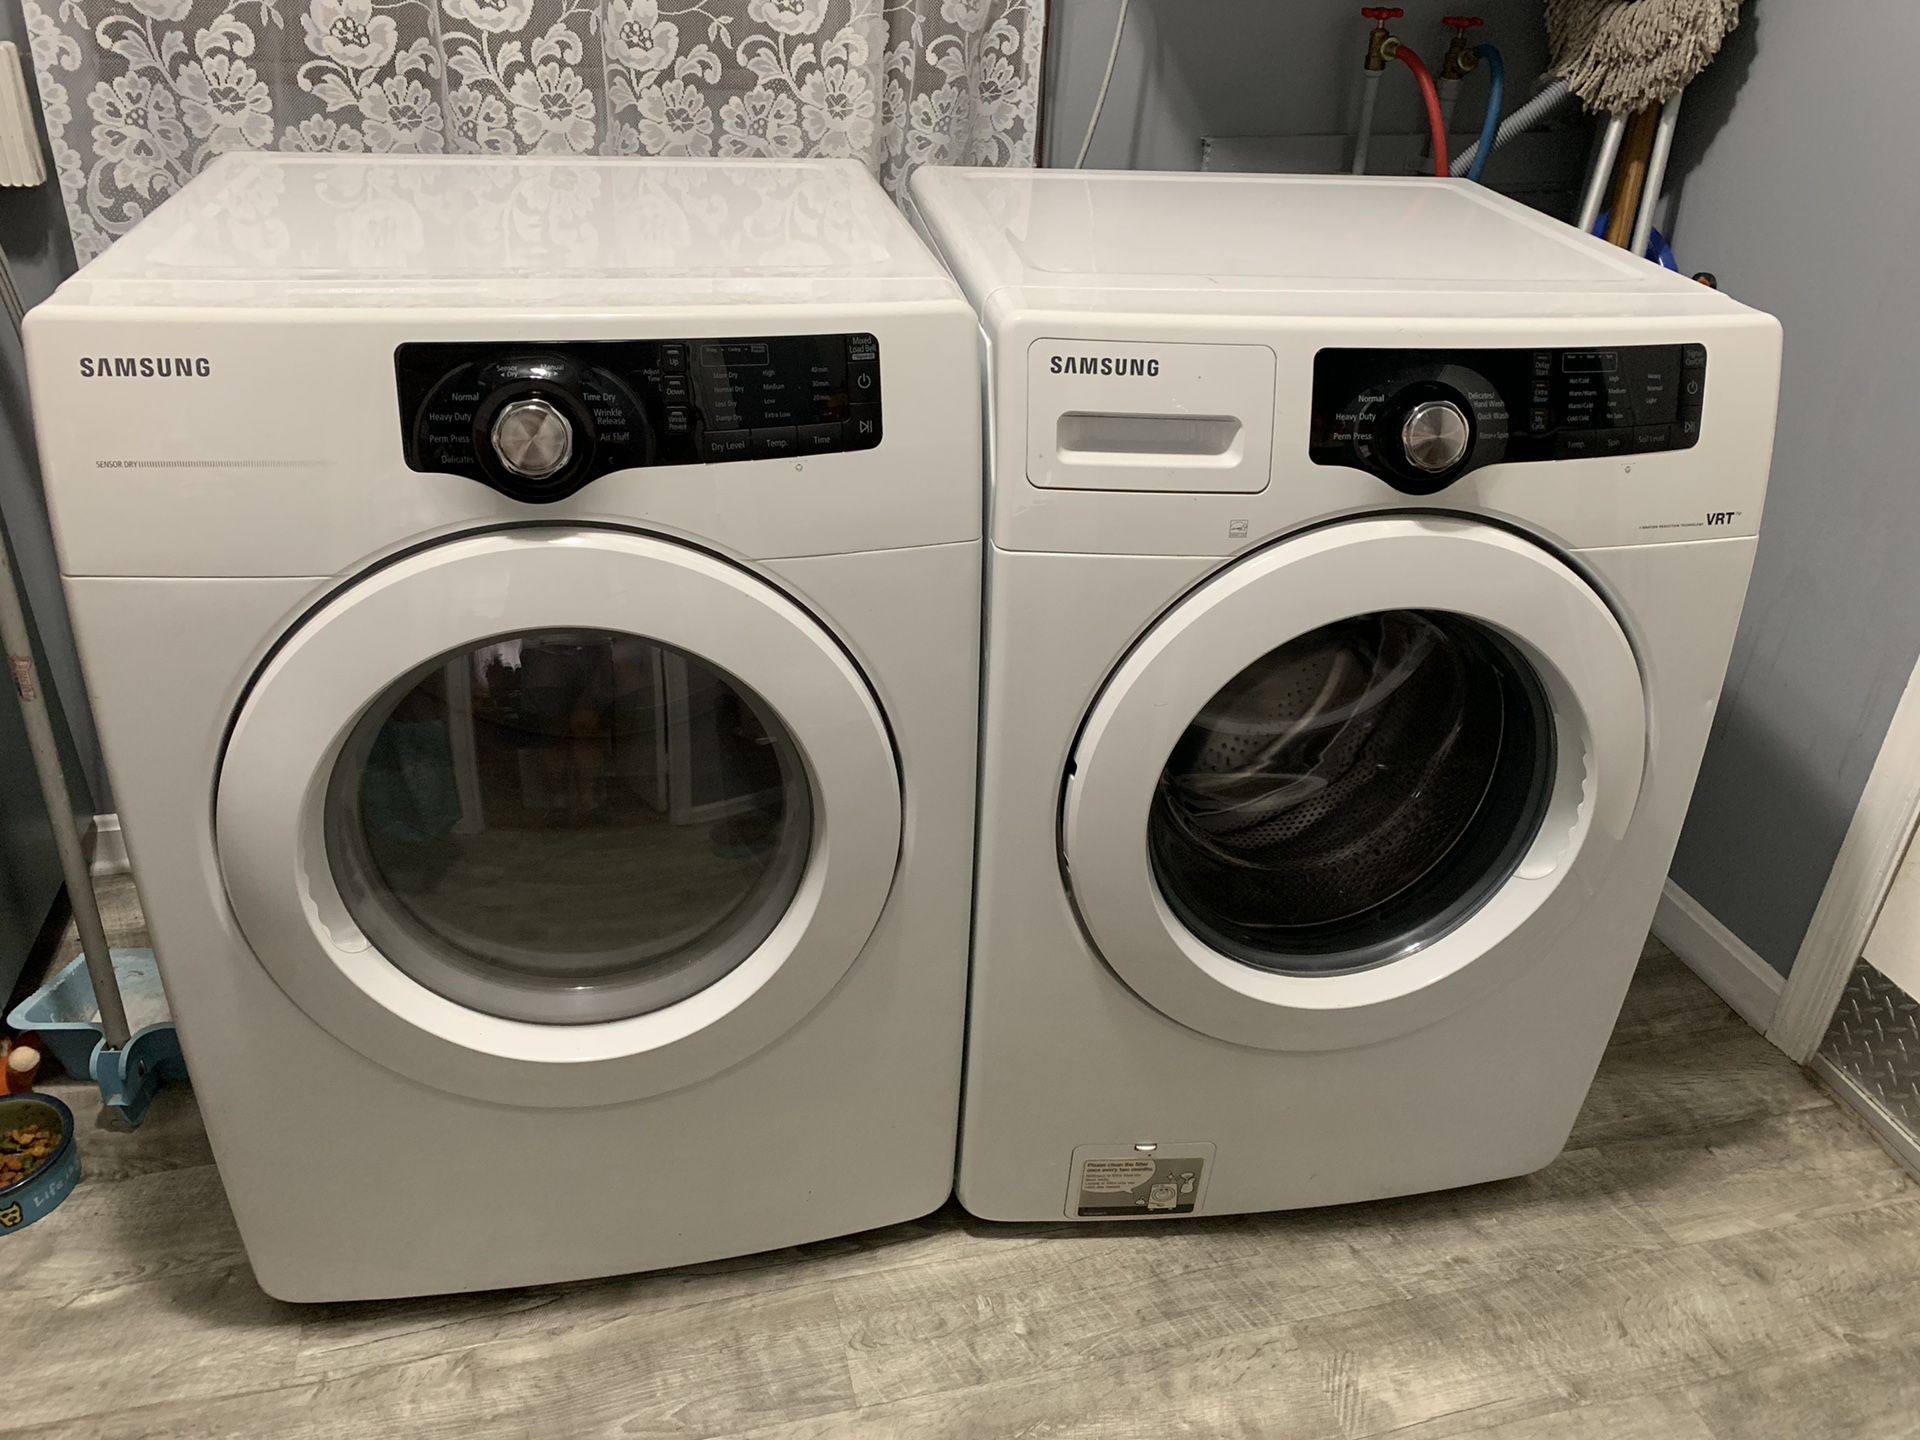 Samsung washing machine and dryer machine (washer and dryer)